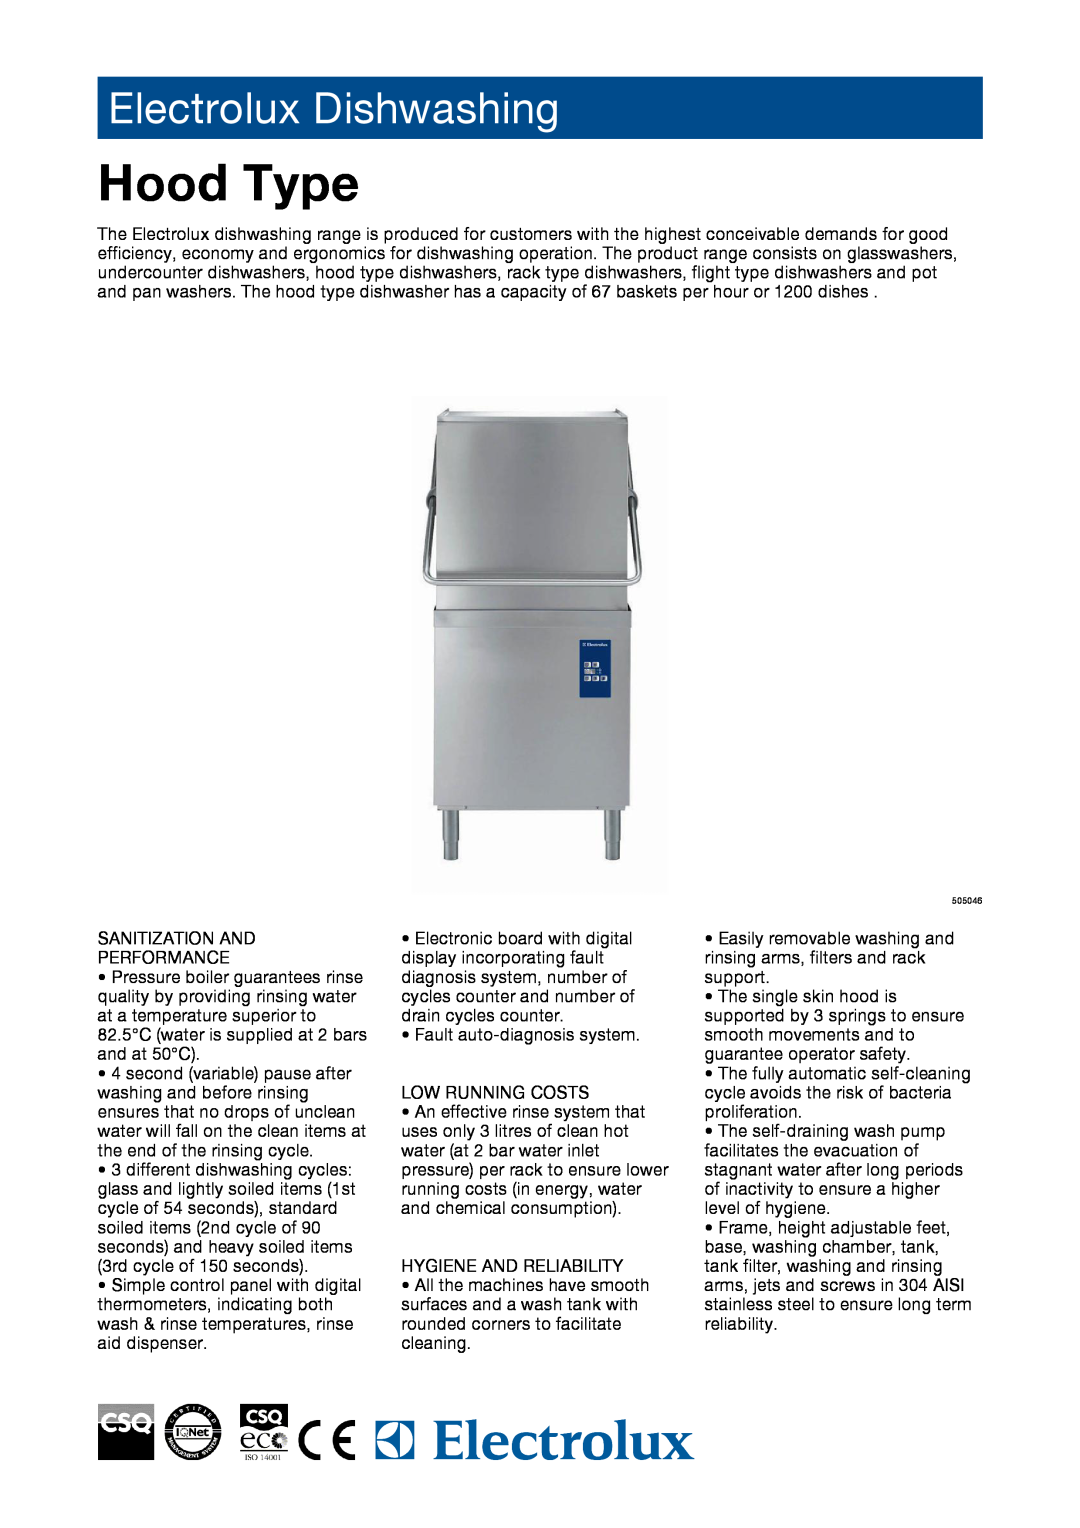 Electrolux 505046, EHT60, 505047 manual Hood Type, Electrolux Dishwashing 